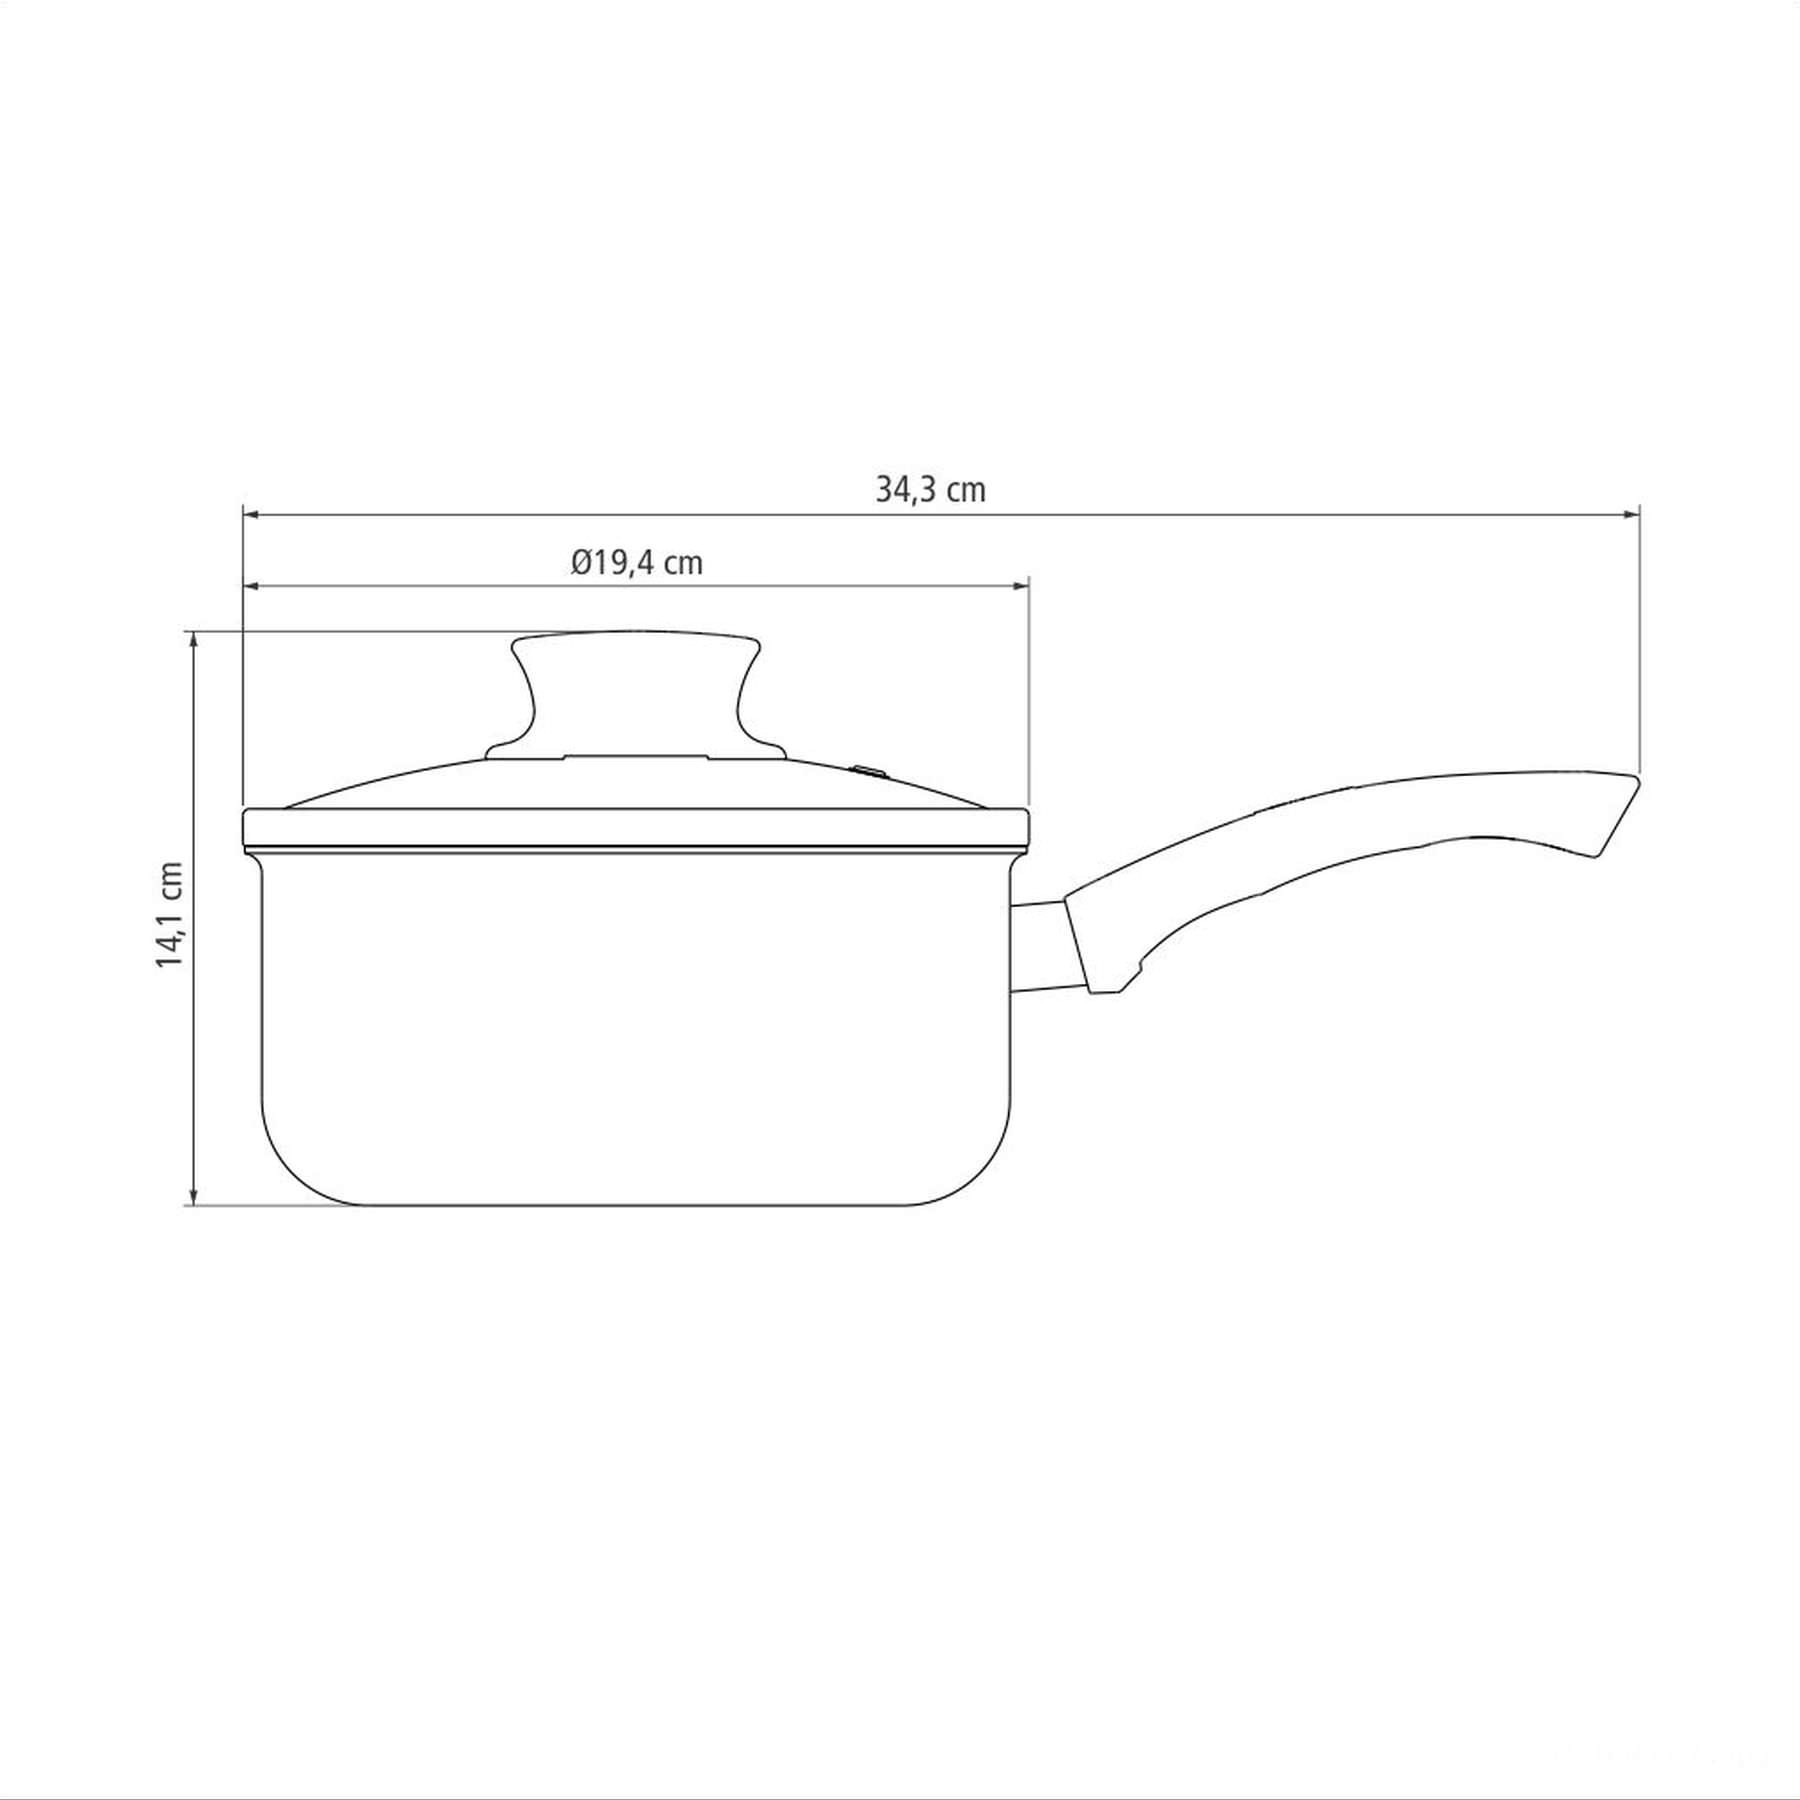 Panela Paris Antiaderente Starflon Max Vermelho com Tampa de Vidro 18 cm 2,1 L